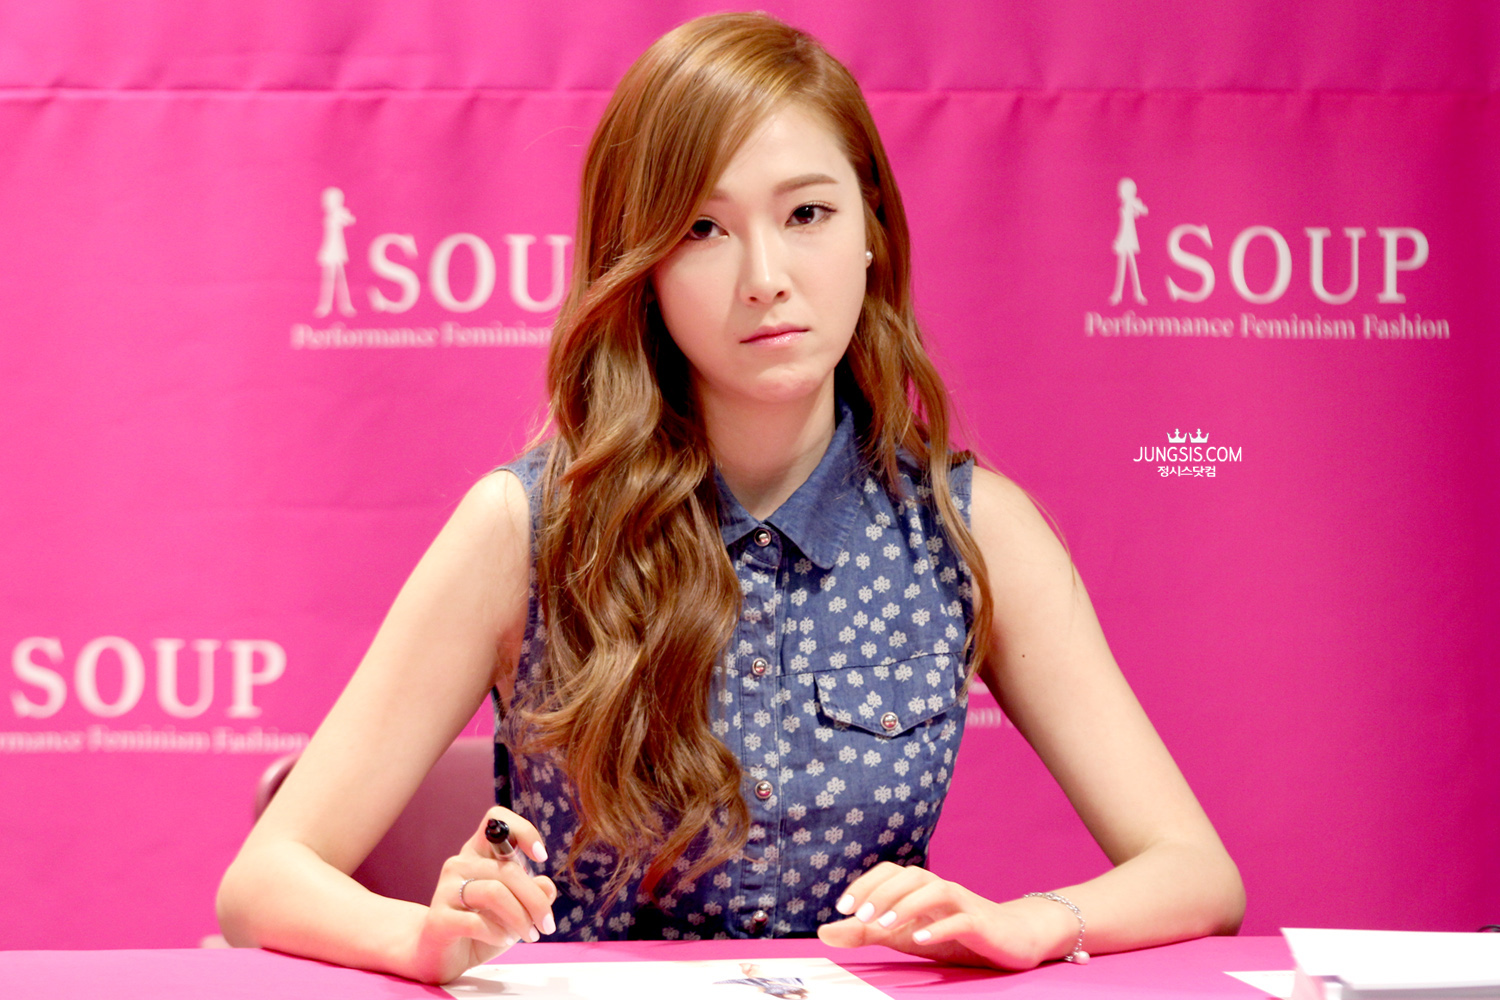 [PIC][04-04-2014]Jessica tham dự buổi fansign cho thương hiệu "SOUP" vào trưa nay - Page 3 2711B74153A449712F82BA